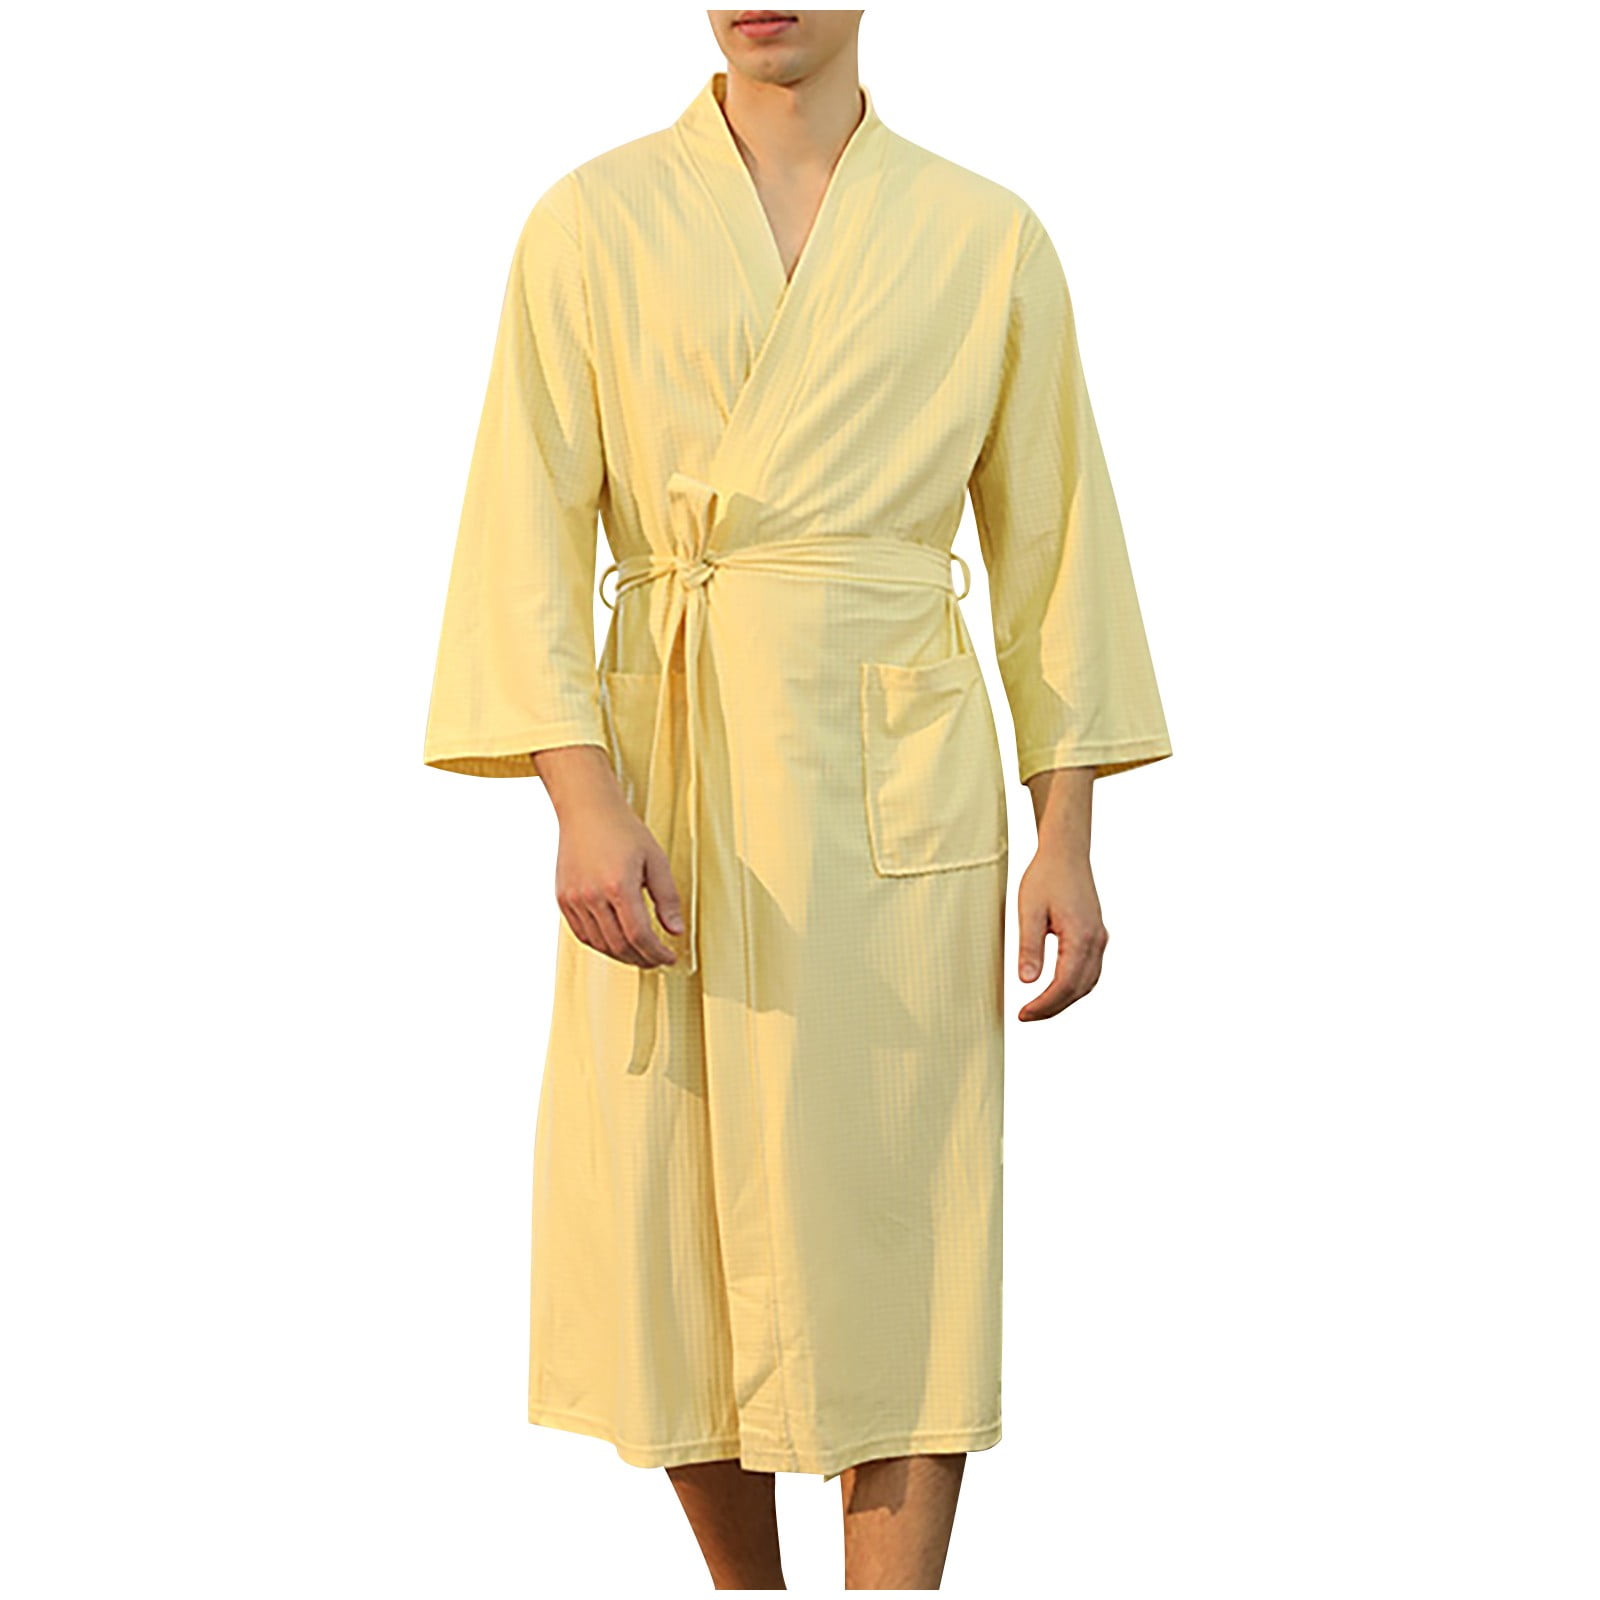 lv bathrobe for women